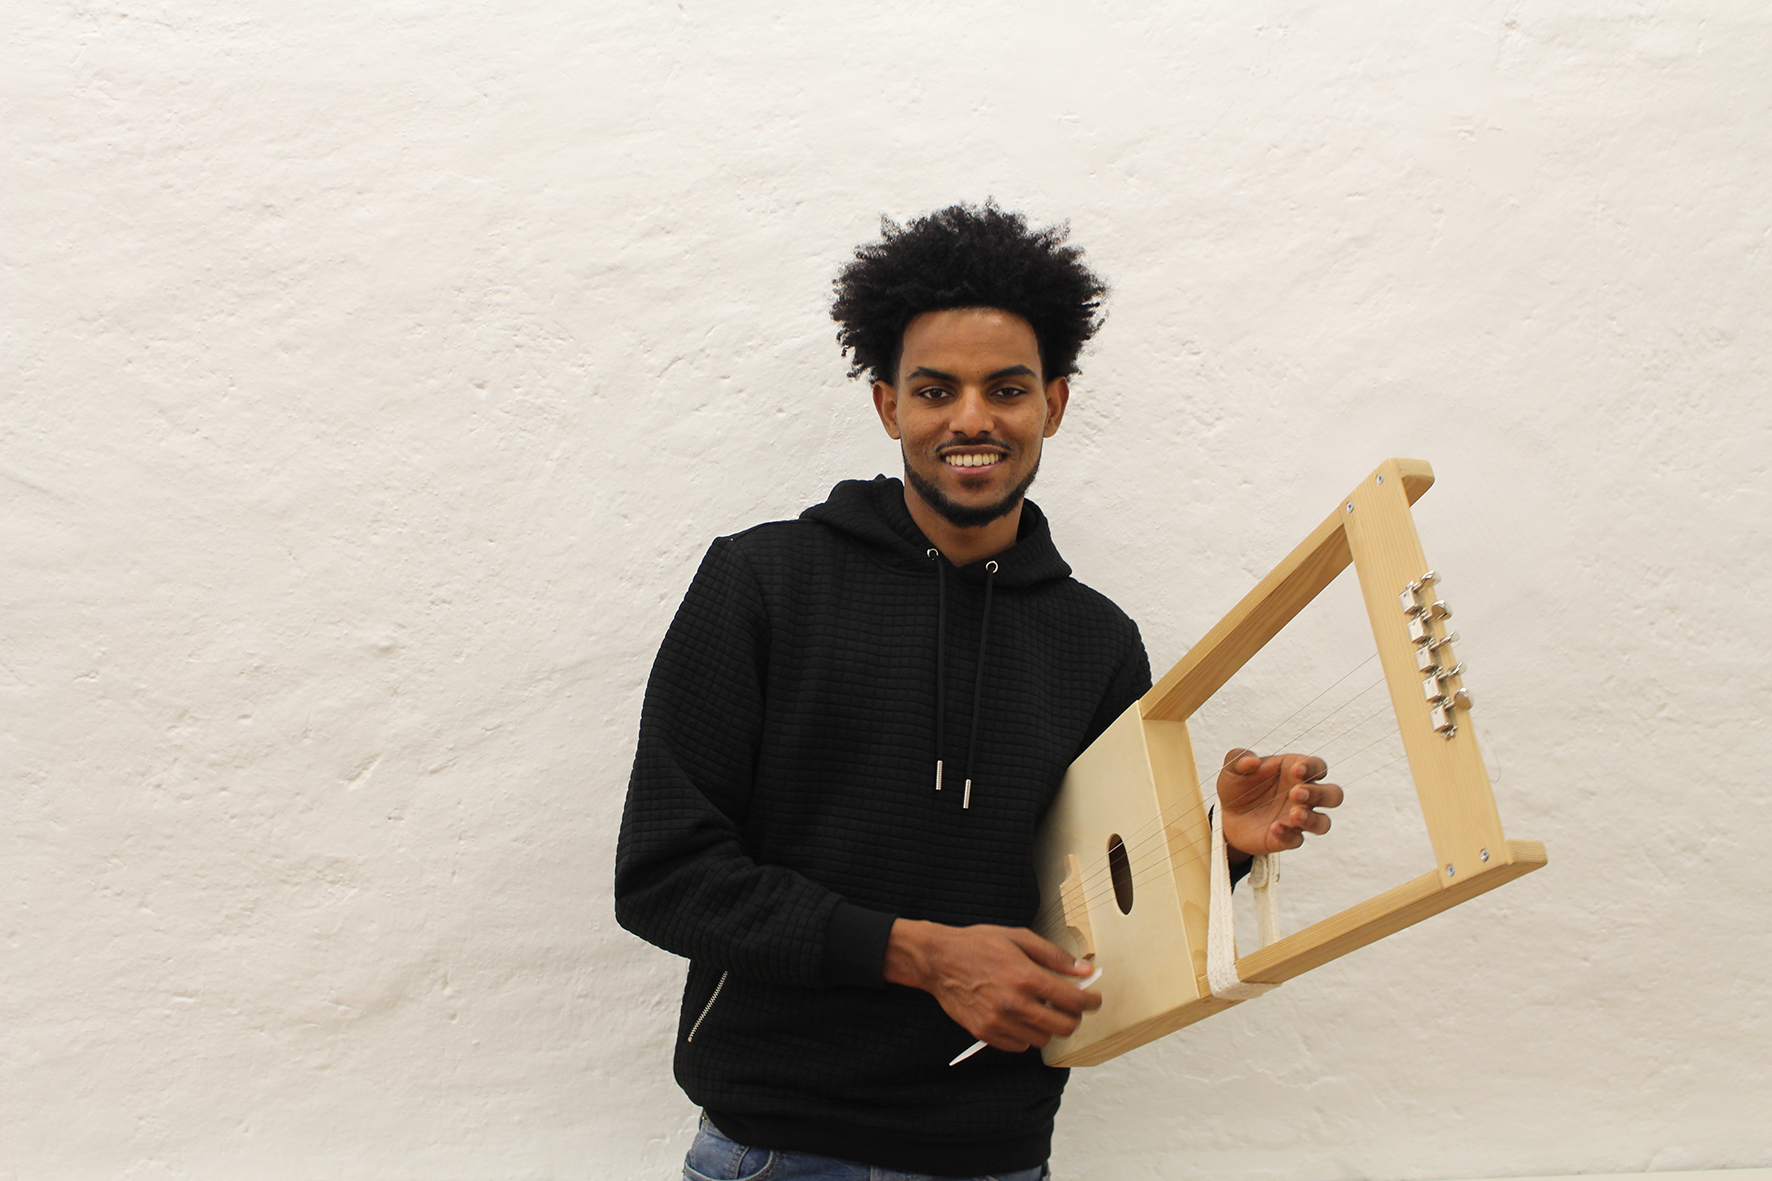 Der 22-jährige Tesfahiwet spielt das Krar, ein traditionelles Saiteninstrument aus Eritrea.